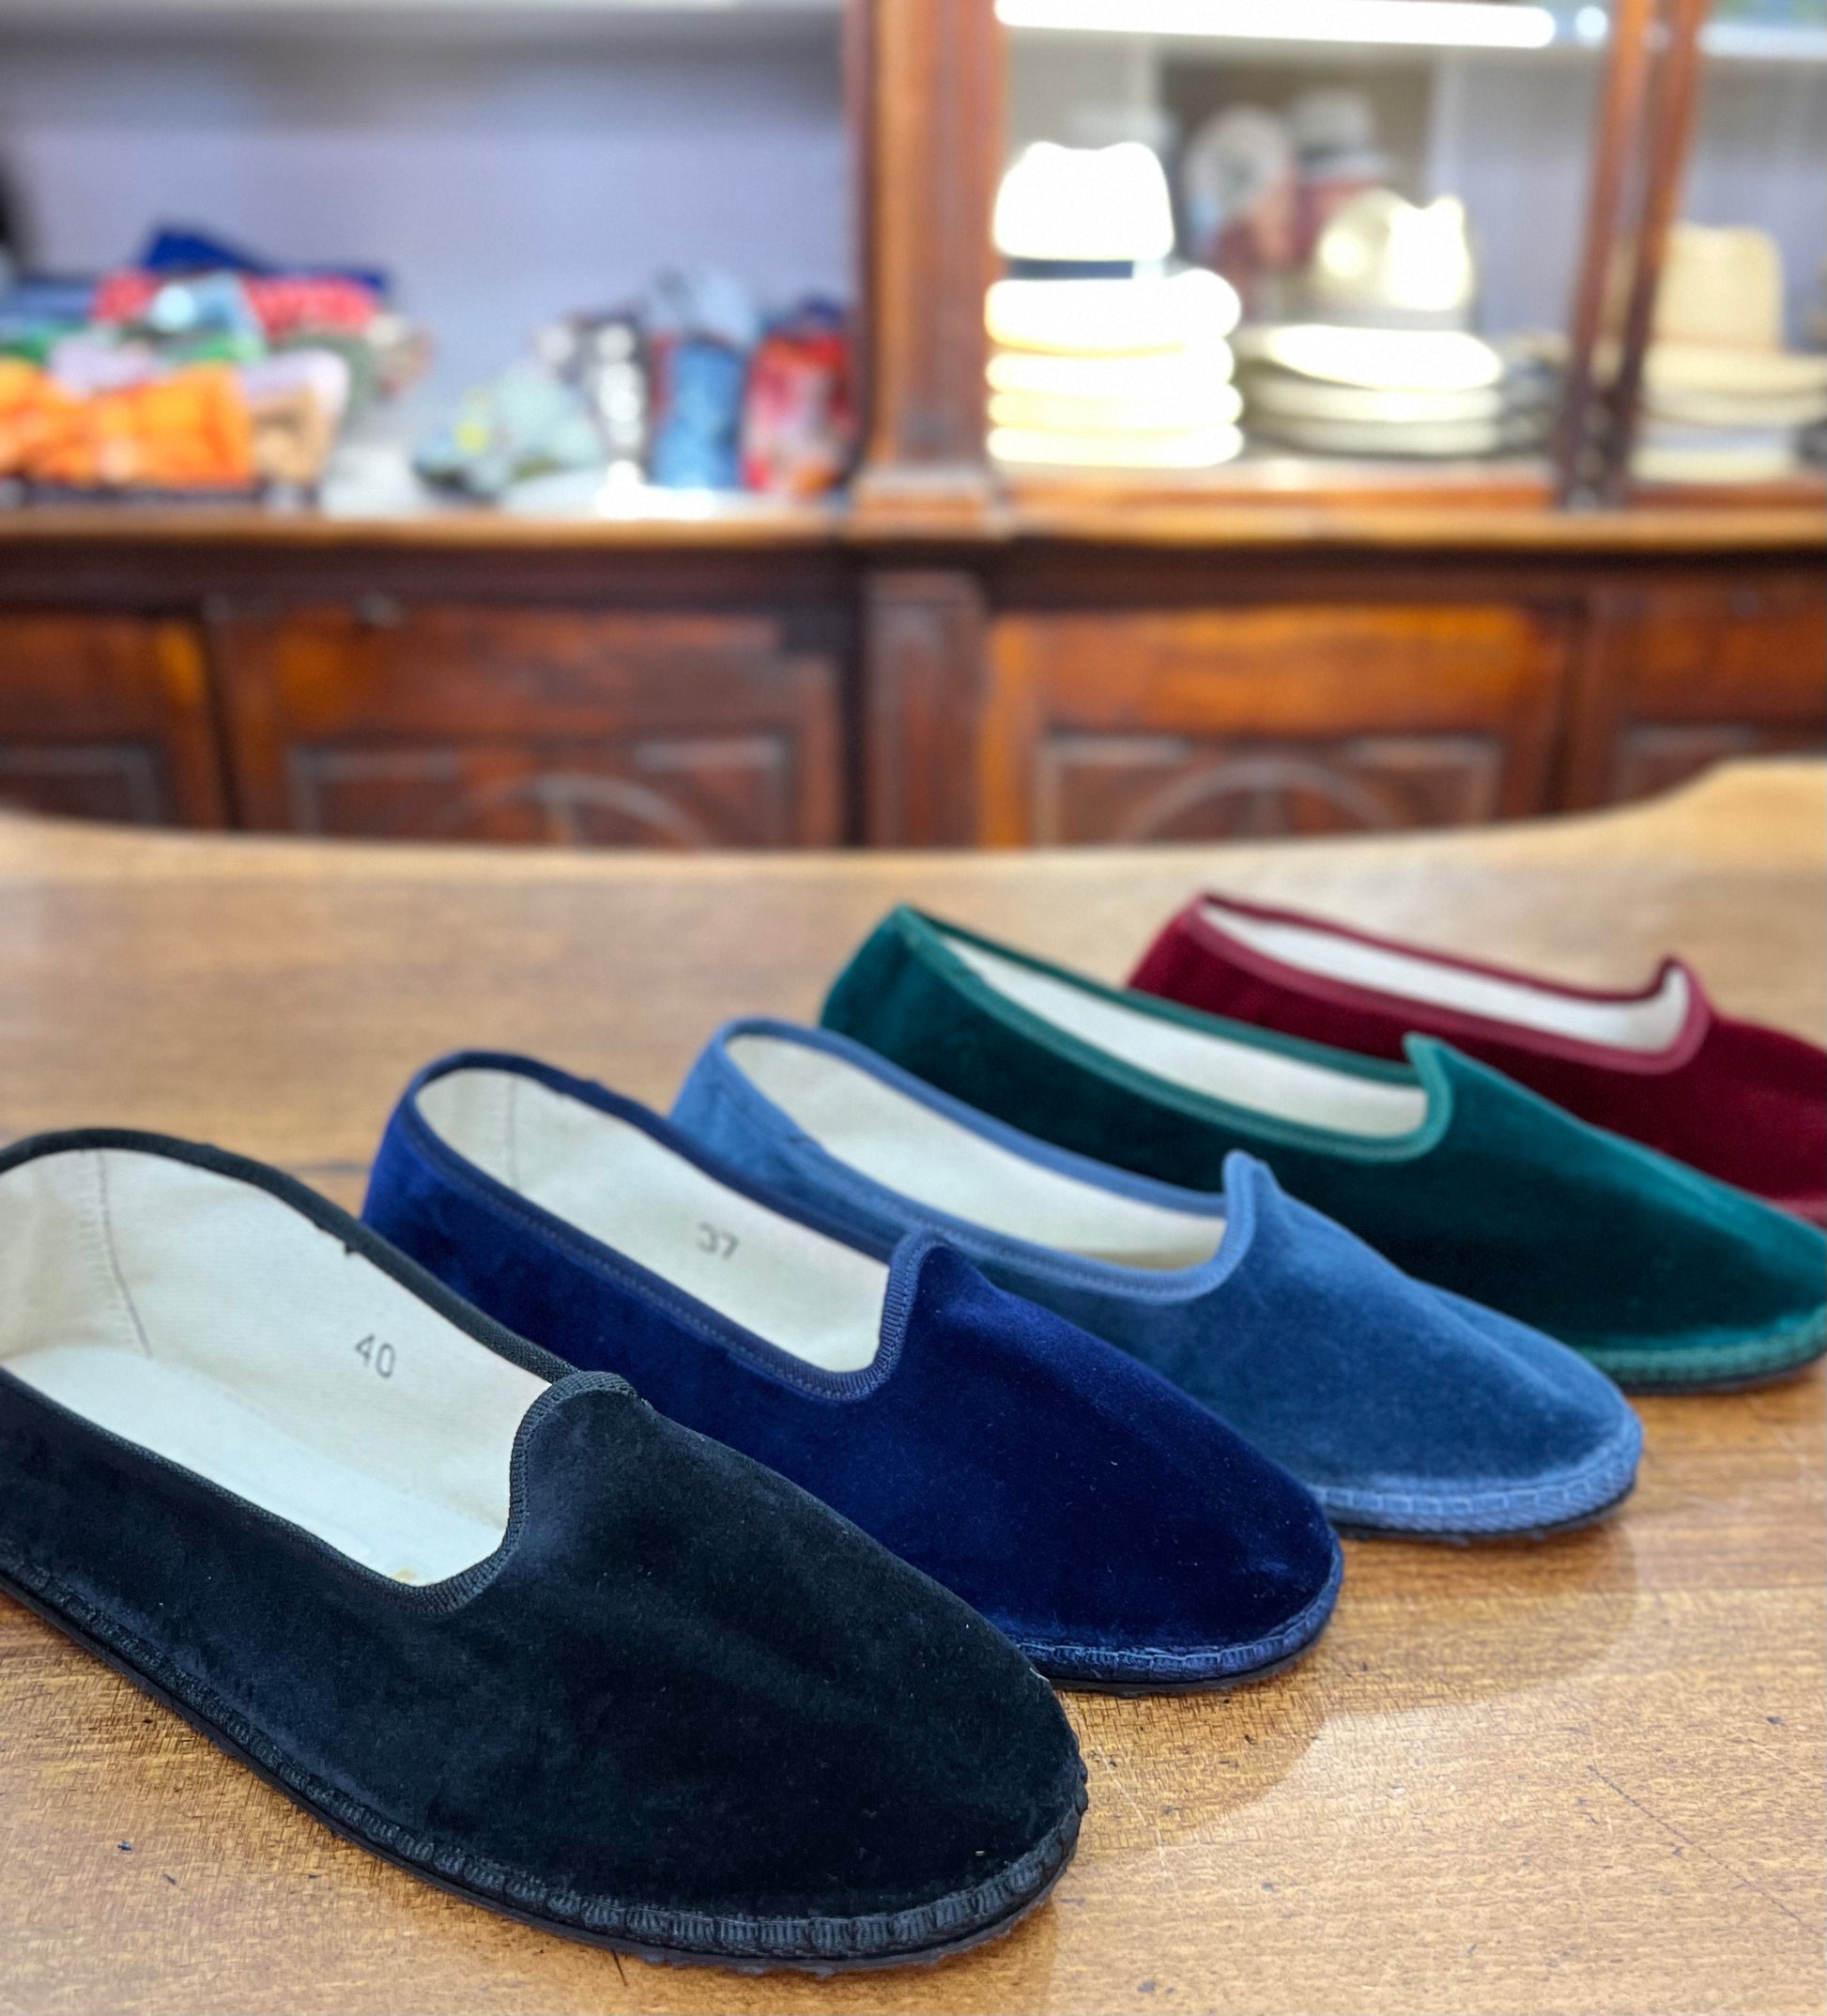 Friulane scarpe originali realizzate a mano con suola in gomma, nei colori nero, blu, turchese, smeraldo e bordeaux